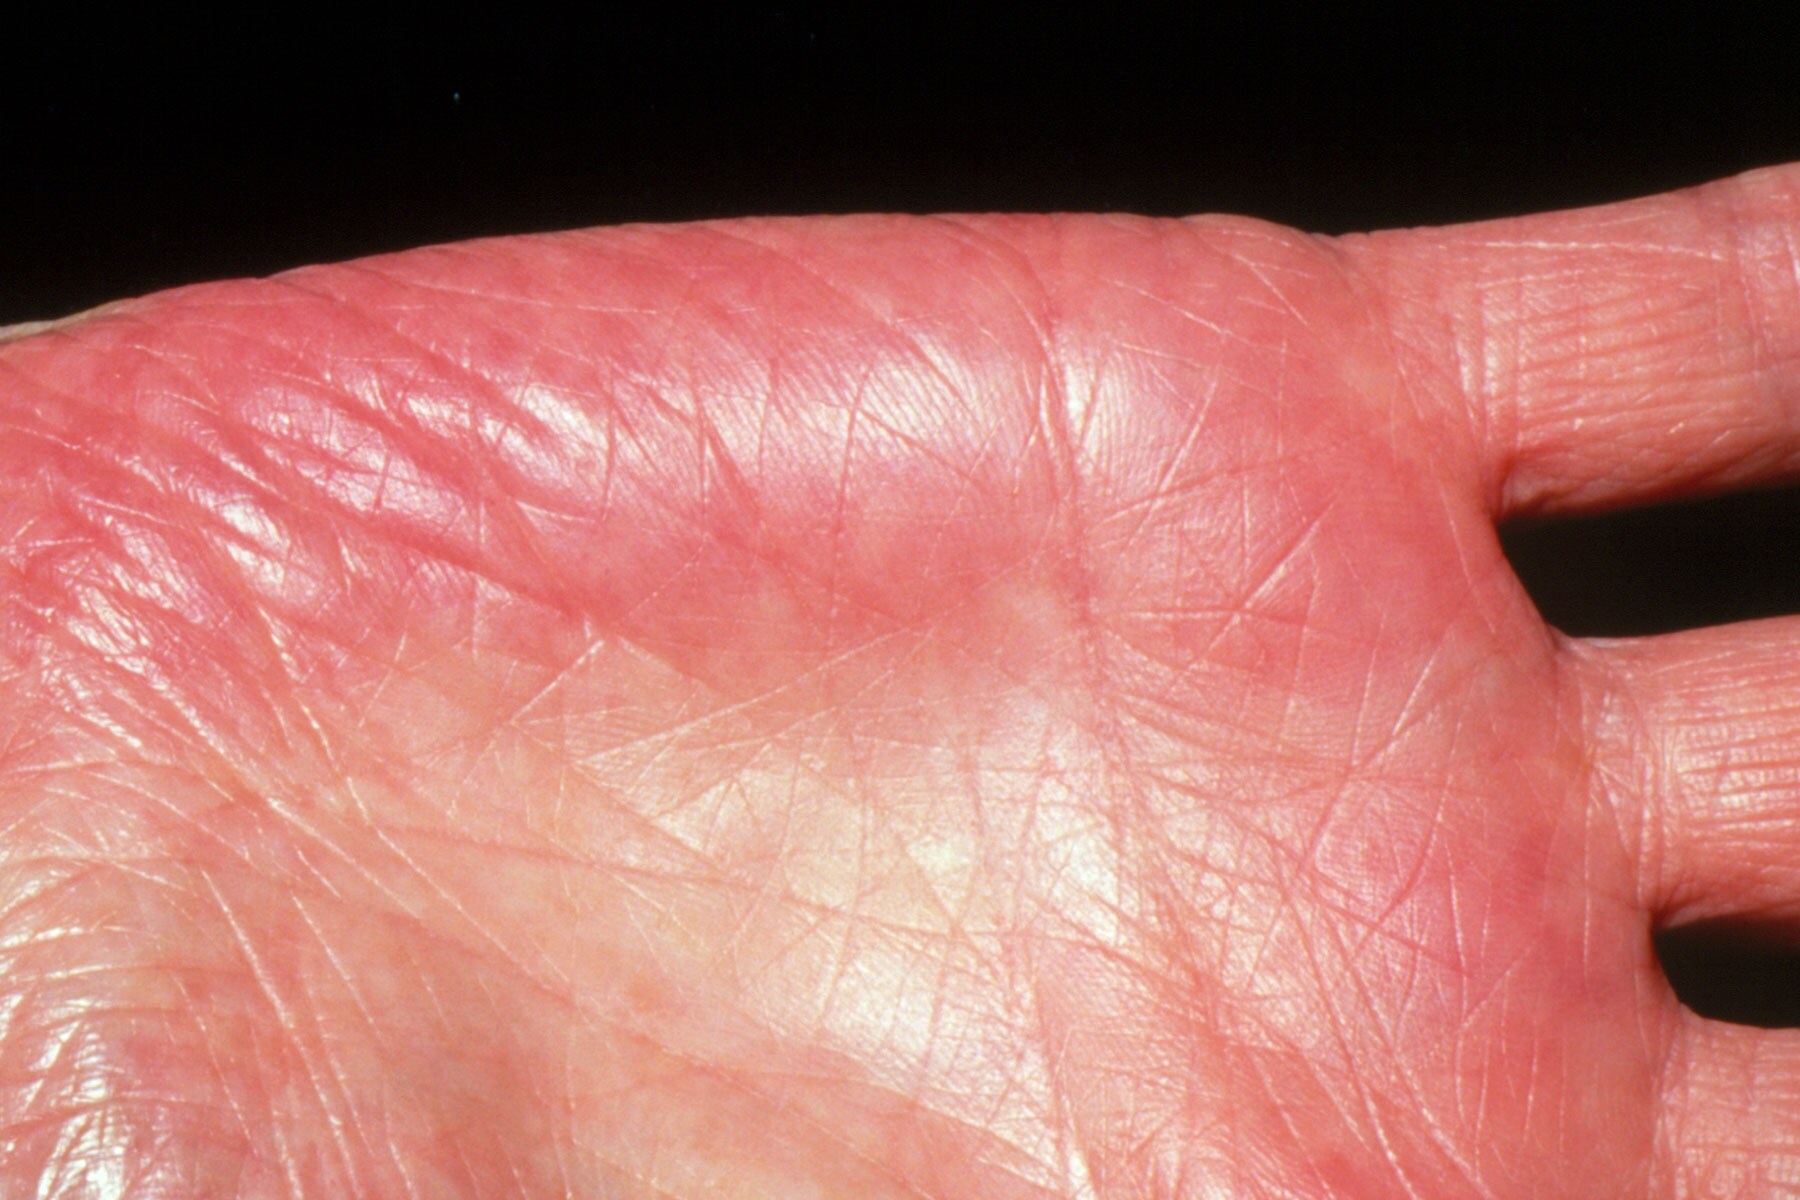 Người gan kém thường có 3 thay đổi bất thường ở bàn tay, đi khám ngay vì rất dễ là dấu hiệu của ung thư gan - Ảnh 2.